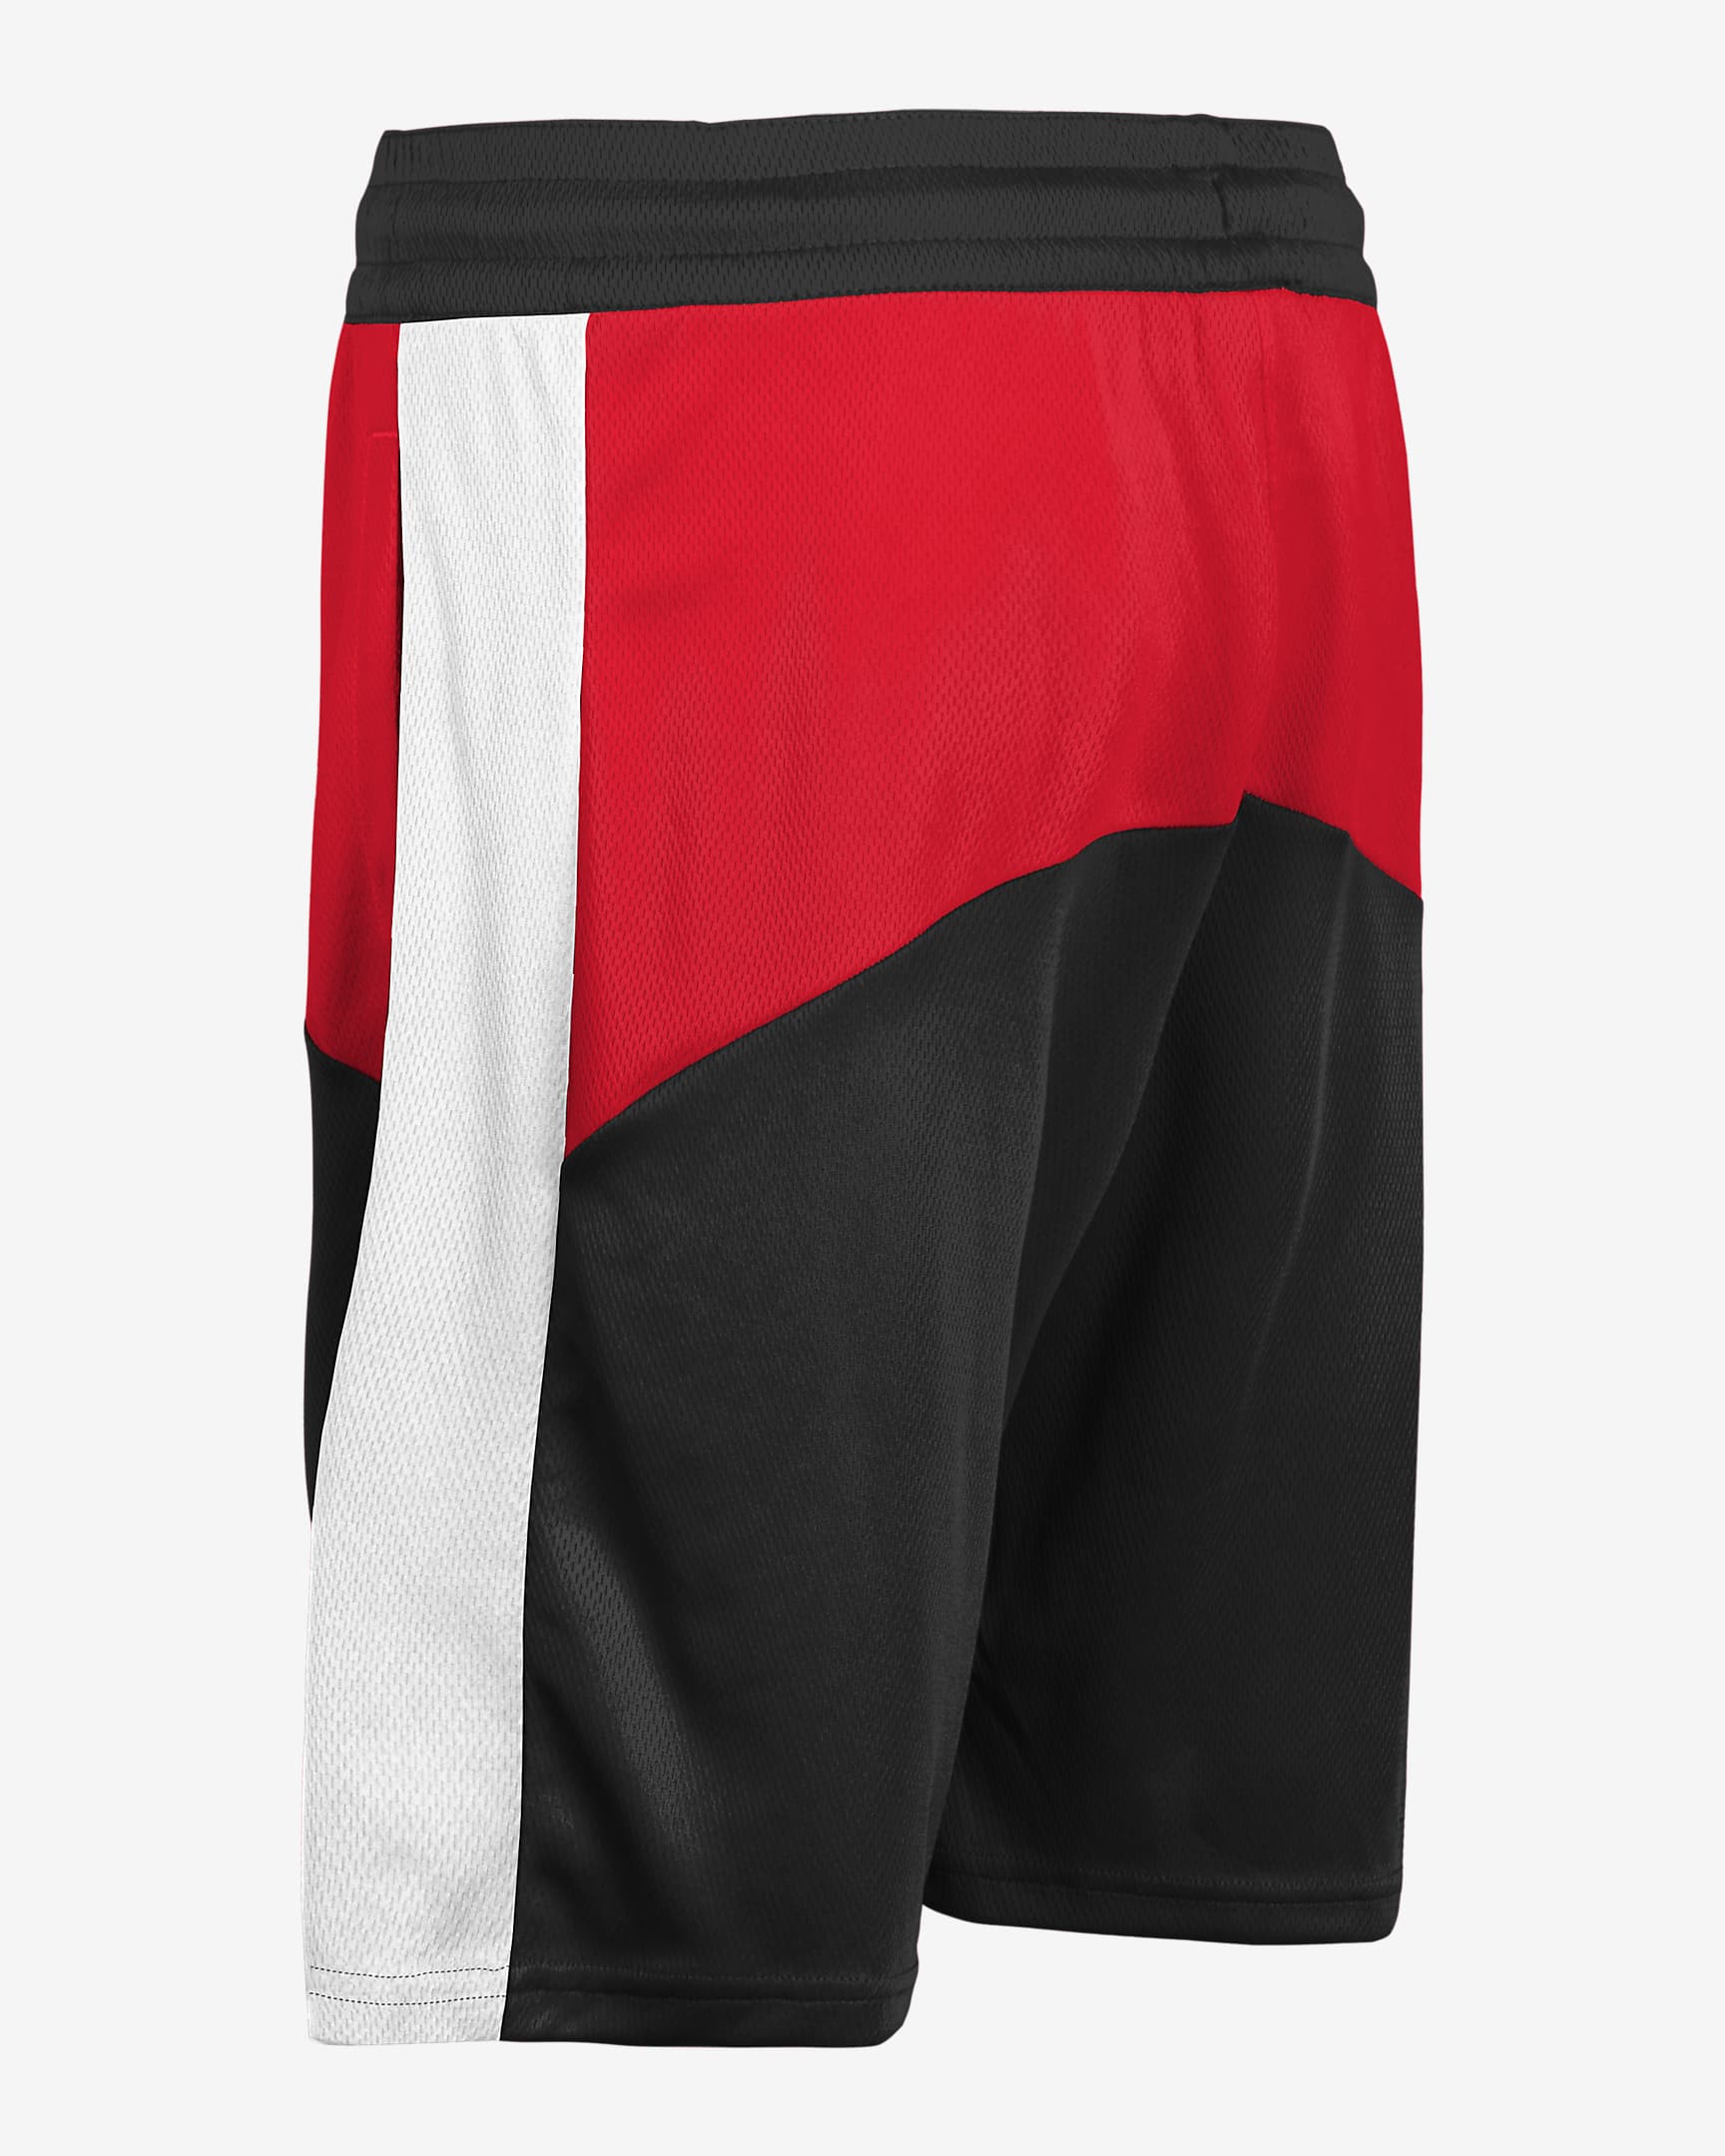 Shorts Nike Dri-FIT de la NBA para niños talla grande Chicago Bulls ...